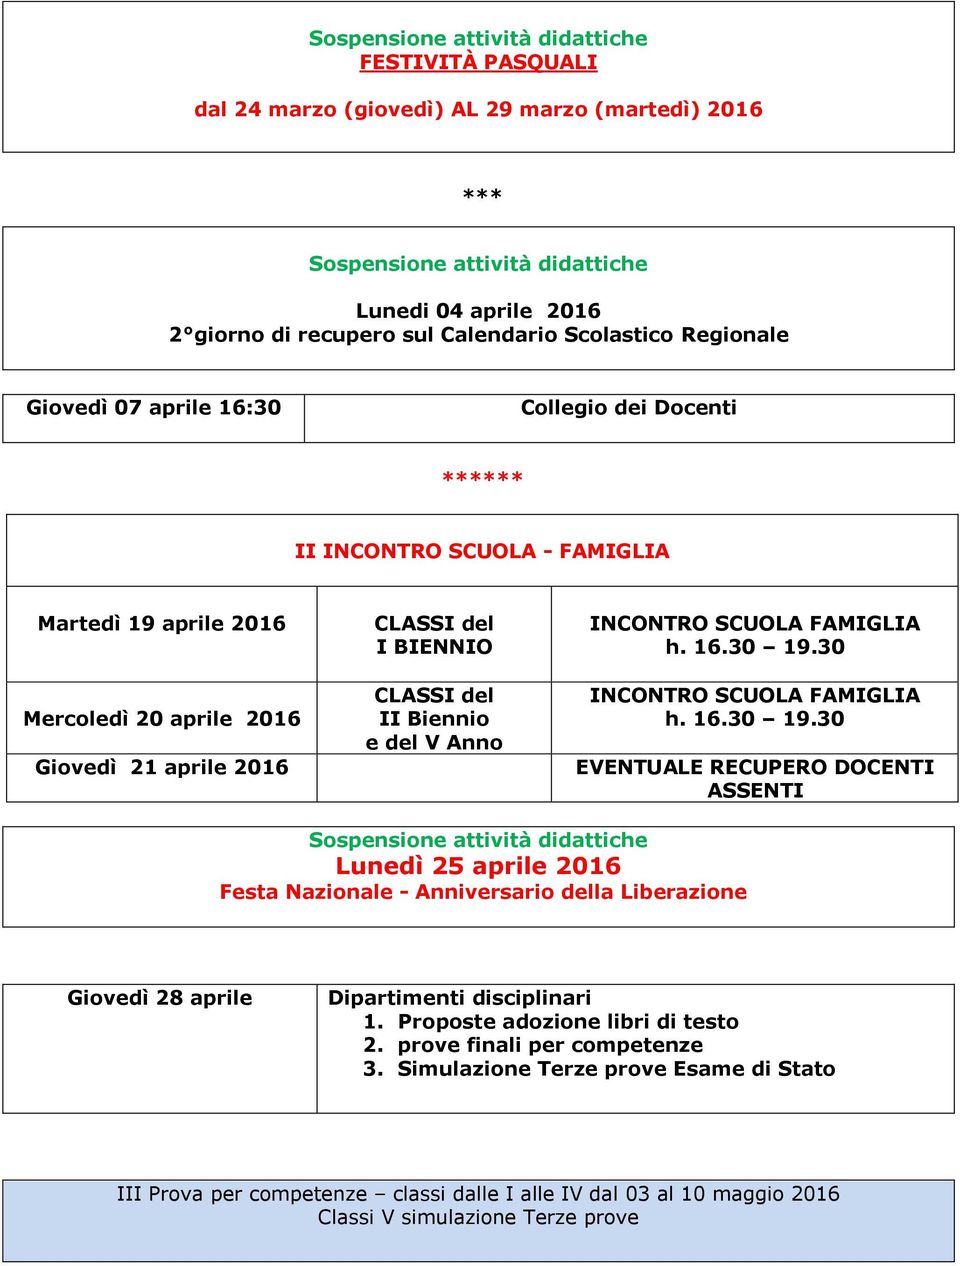 CLASSI del II Biennio e del V Anno INCONTRO SCUOLA FAMIGLIA h. 16.30 19.